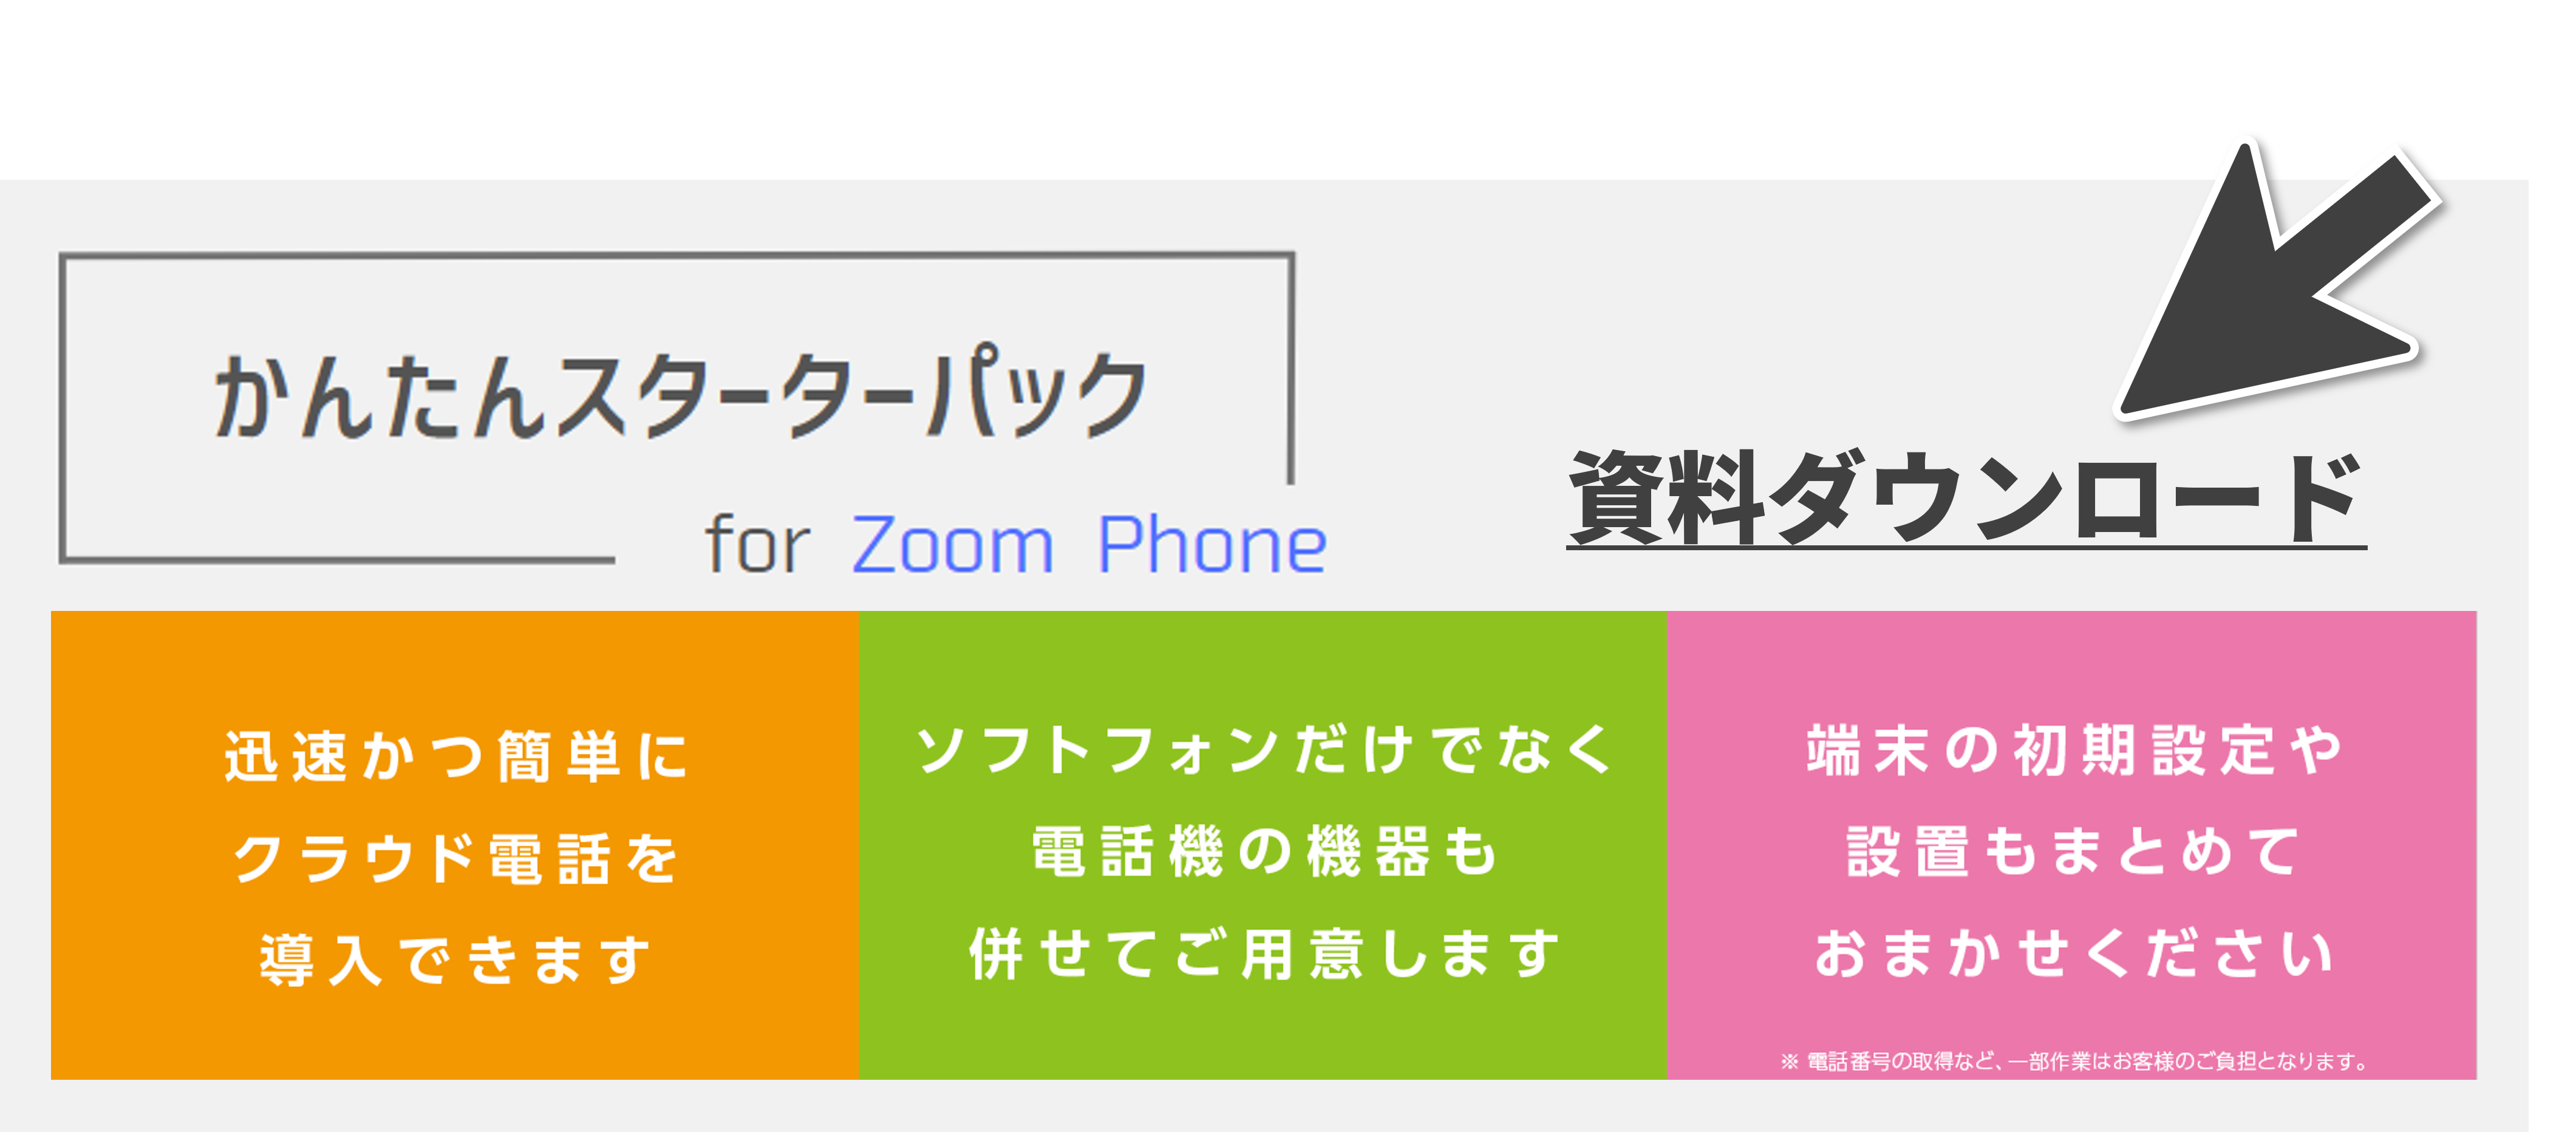 かんたんスターターパック for Zoom Phone